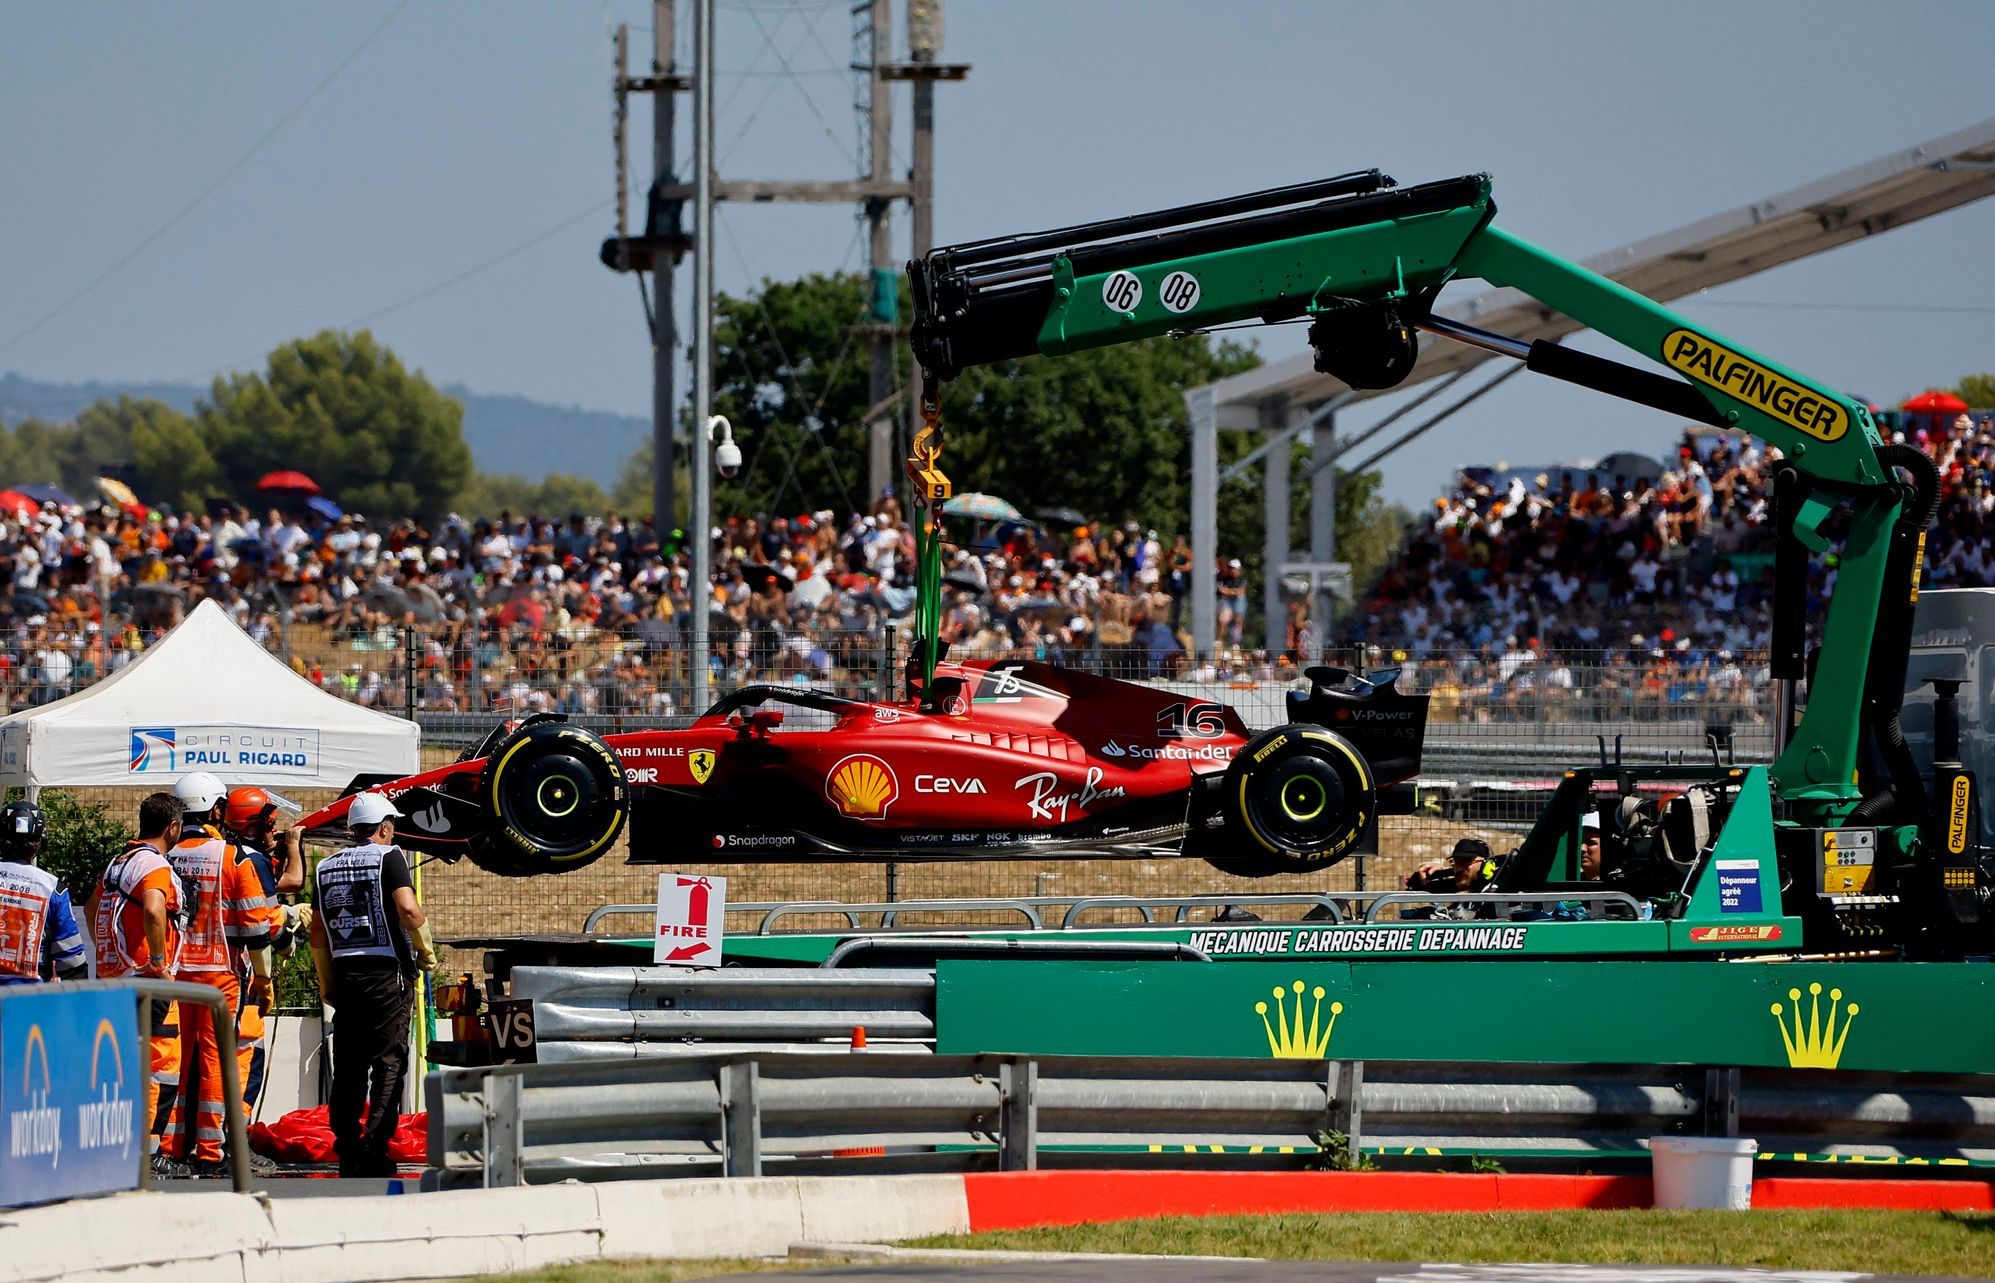 Leclerc a envoyé la formule à la barrière.  Verstappen remporte le Grand Prix de France